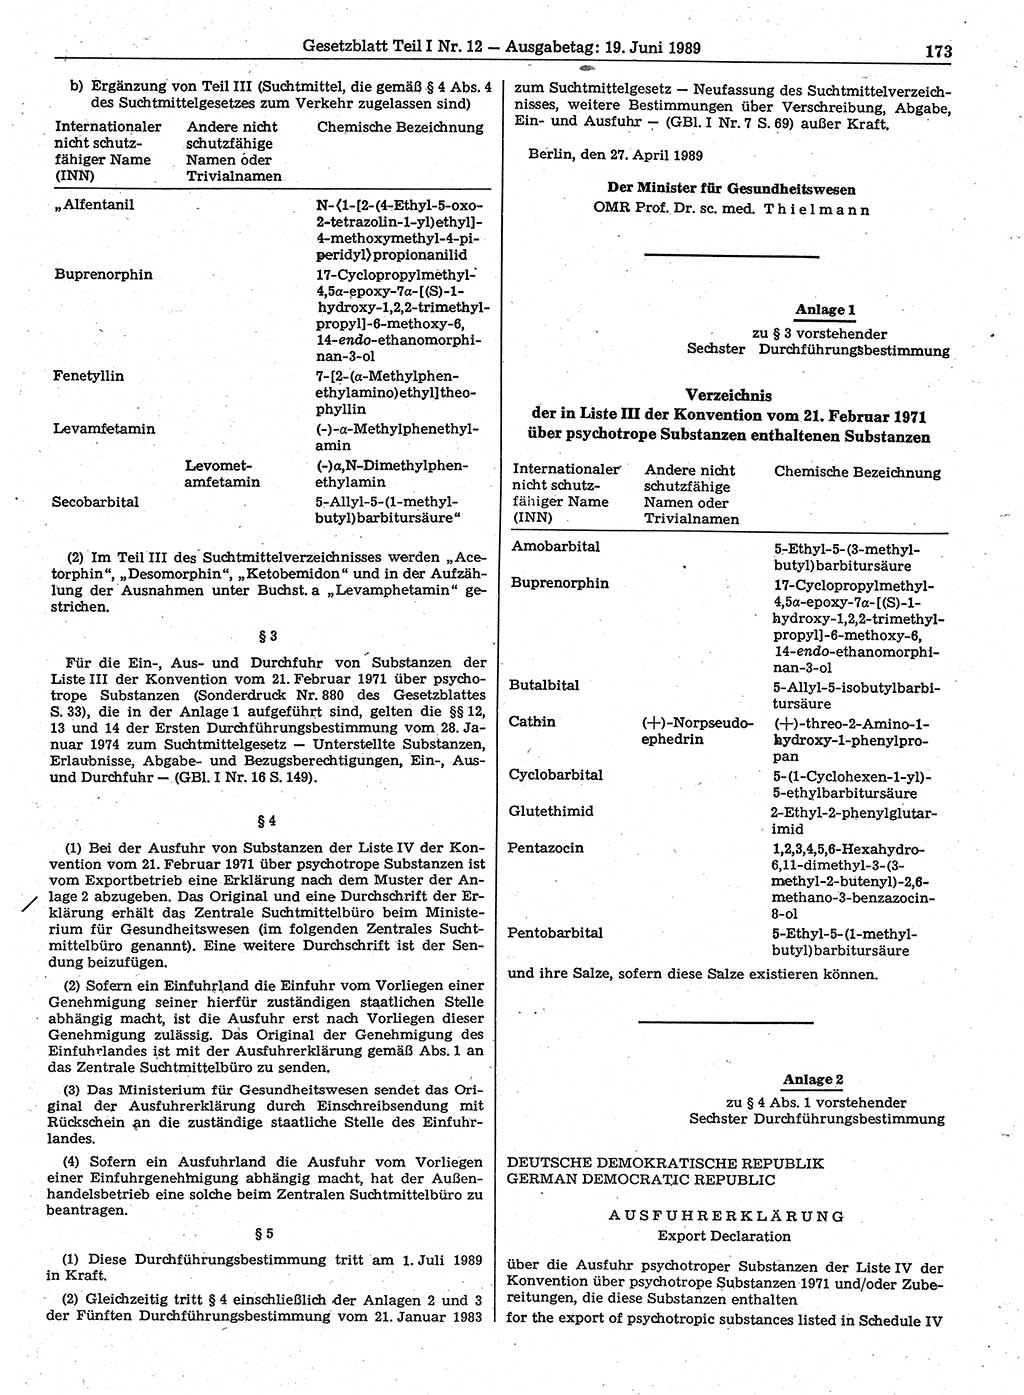 Gesetzblatt (GBl.) der Deutschen Demokratischen Republik (DDR) Teil Ⅰ 1989, Seite 173 (GBl. DDR Ⅰ 1989, S. 173)